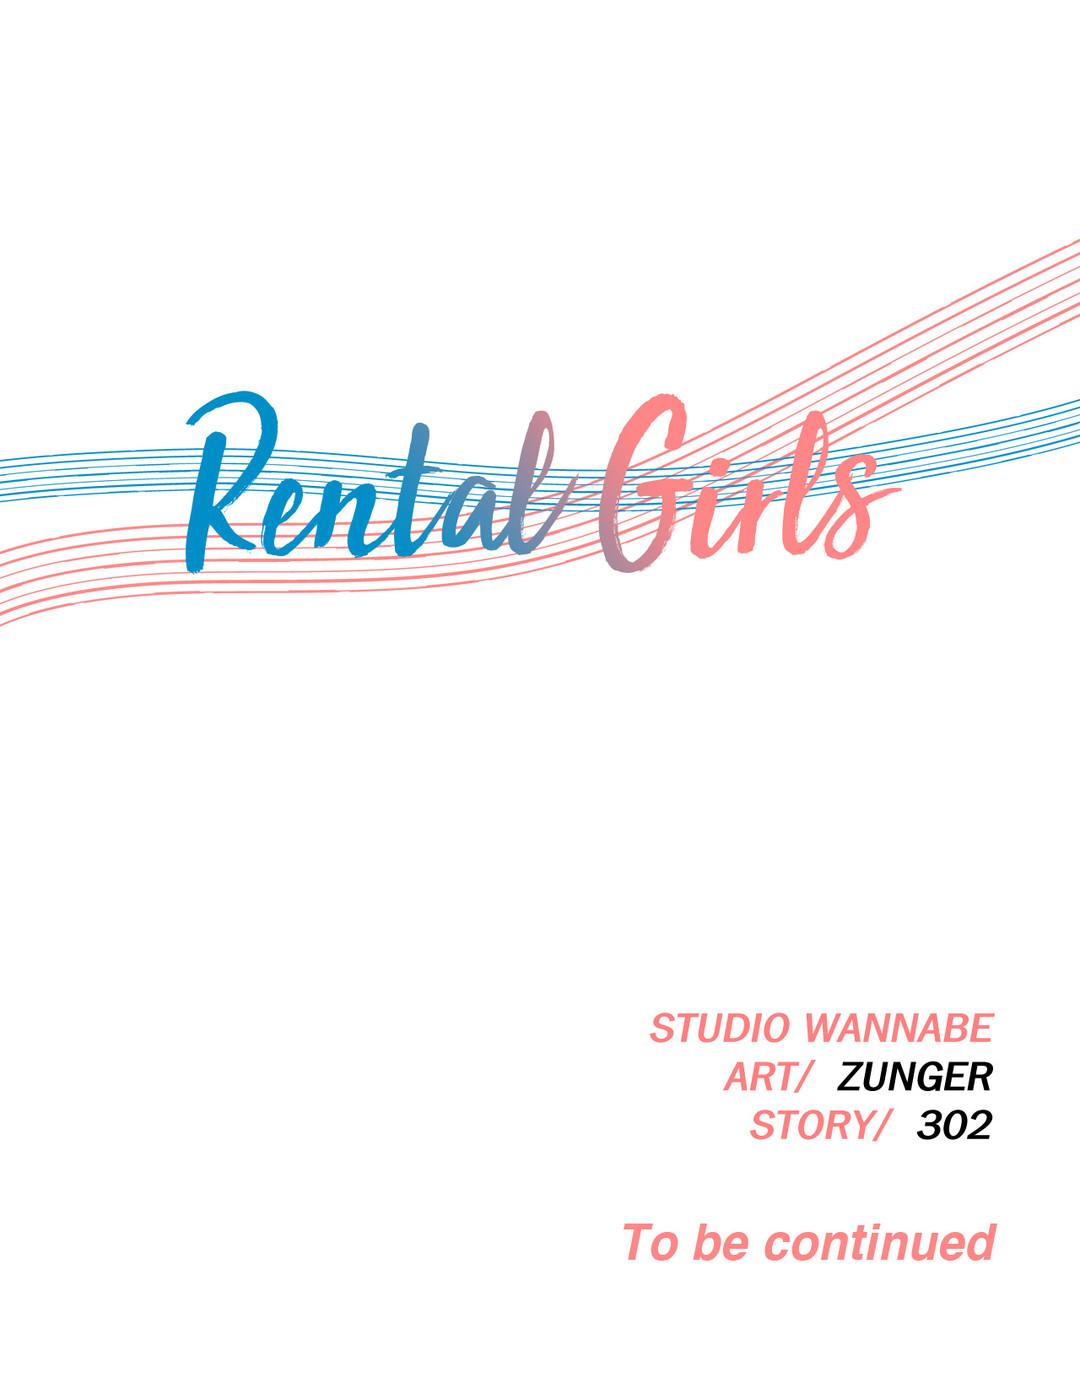 Rental Girls Ch 4 - 11 81